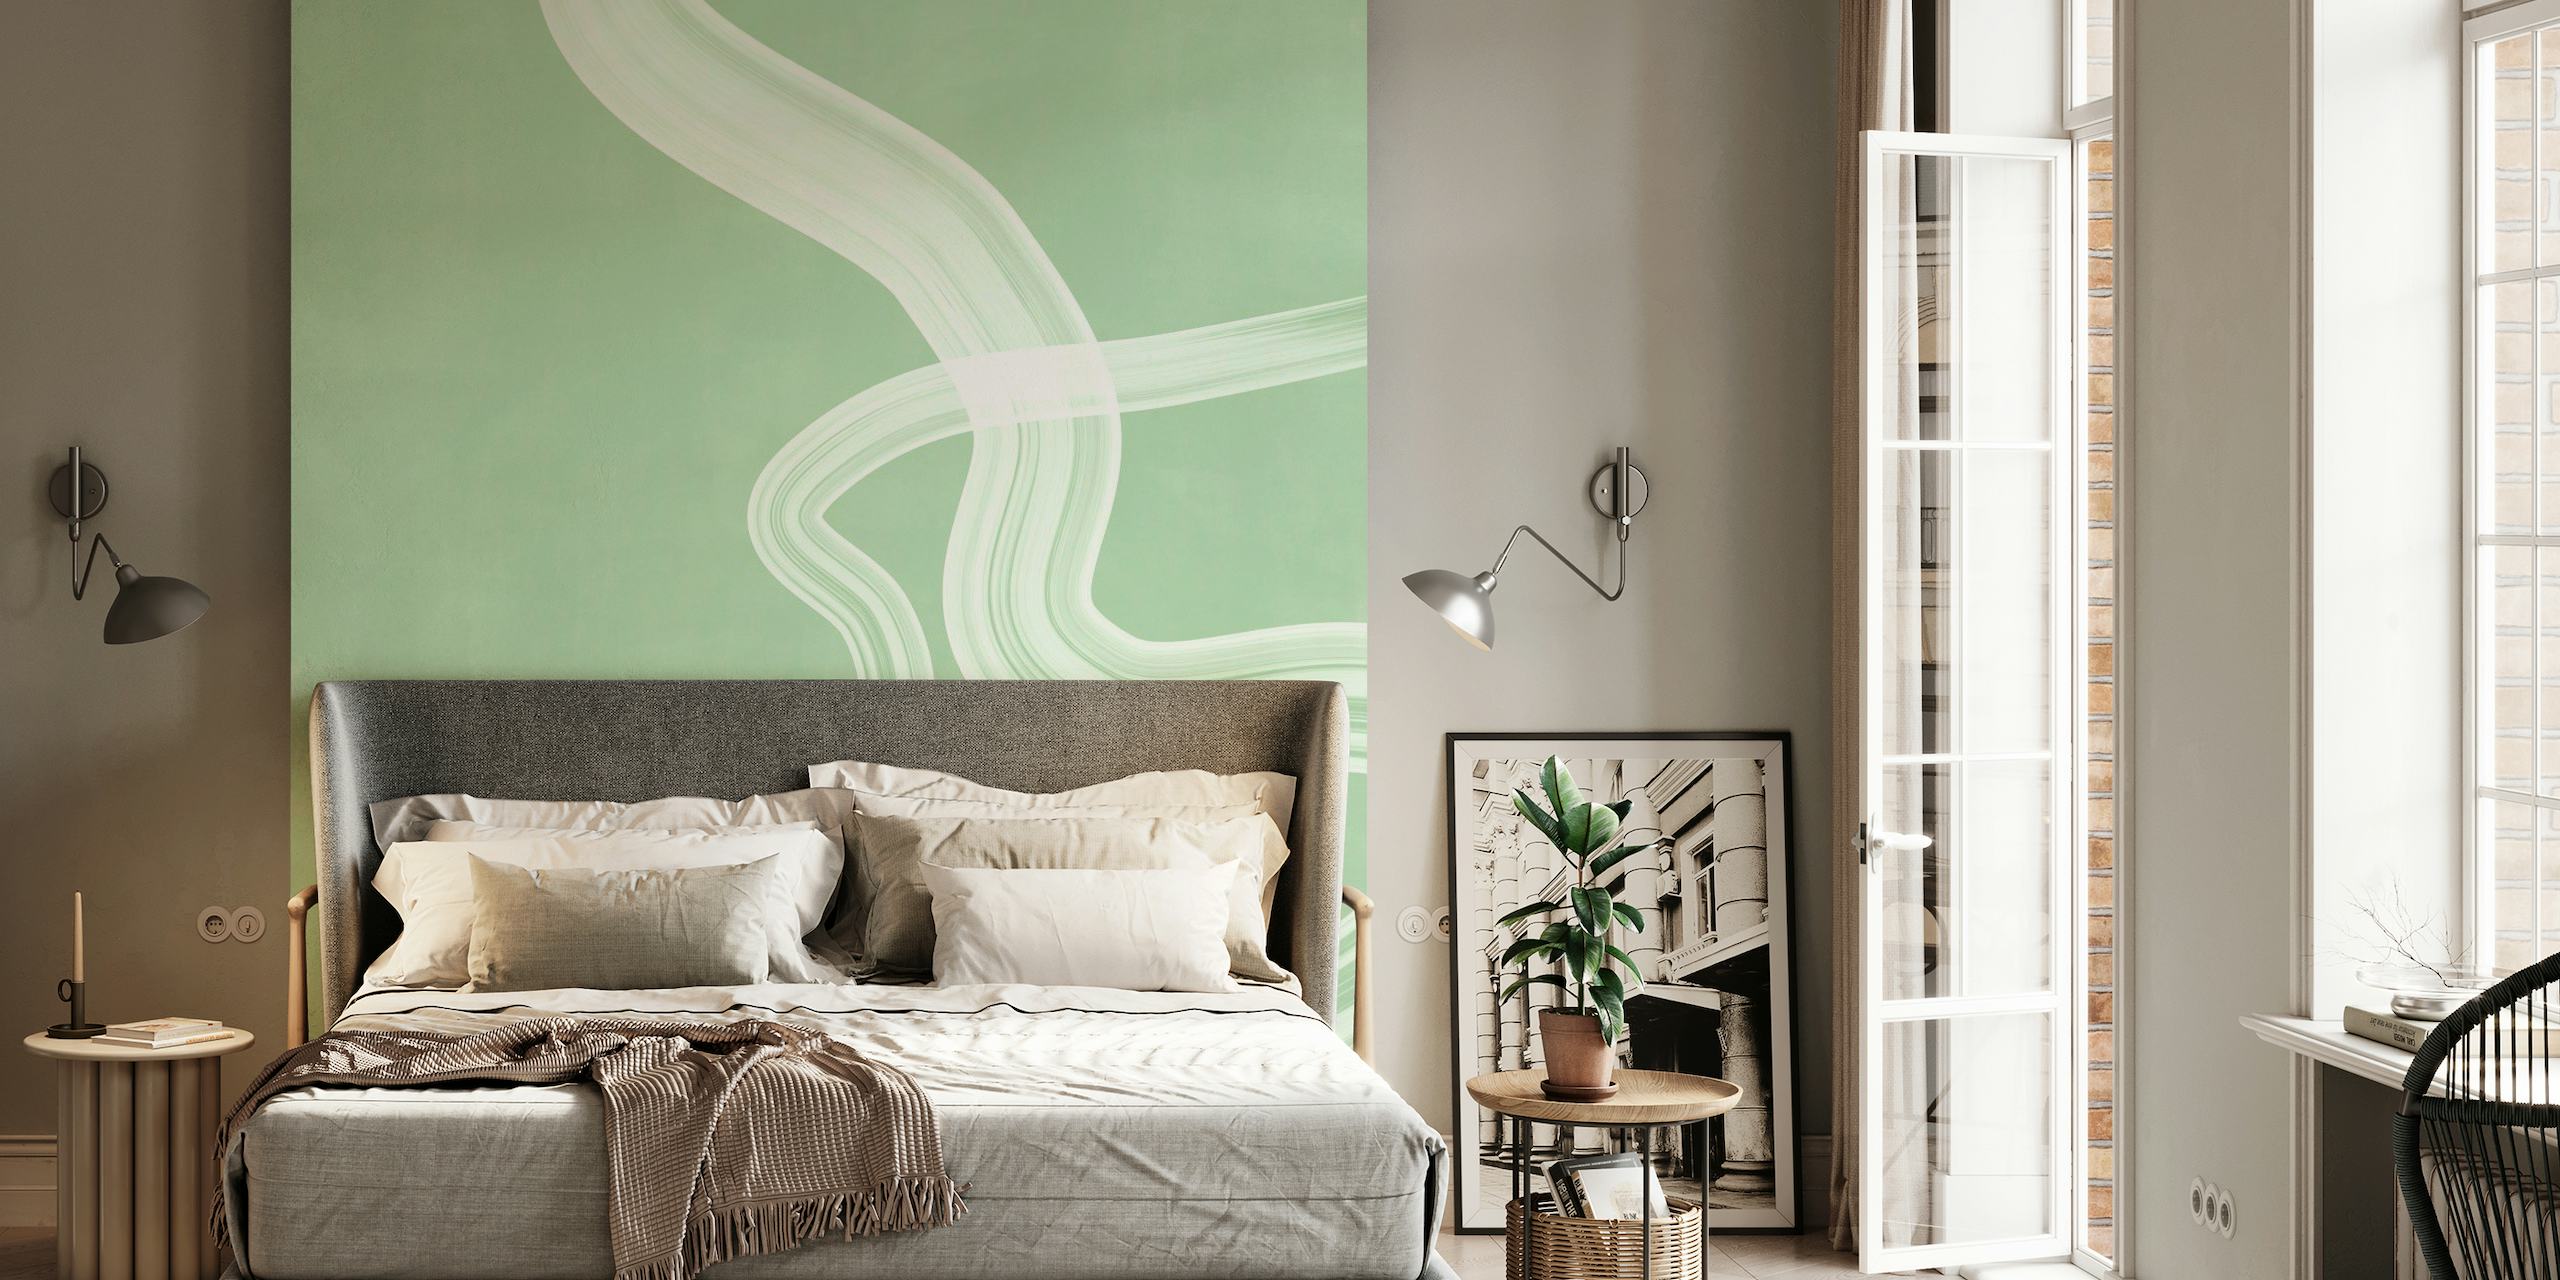 Sanftes grünes Wandbild mit abstraktem Wellenliniendesign